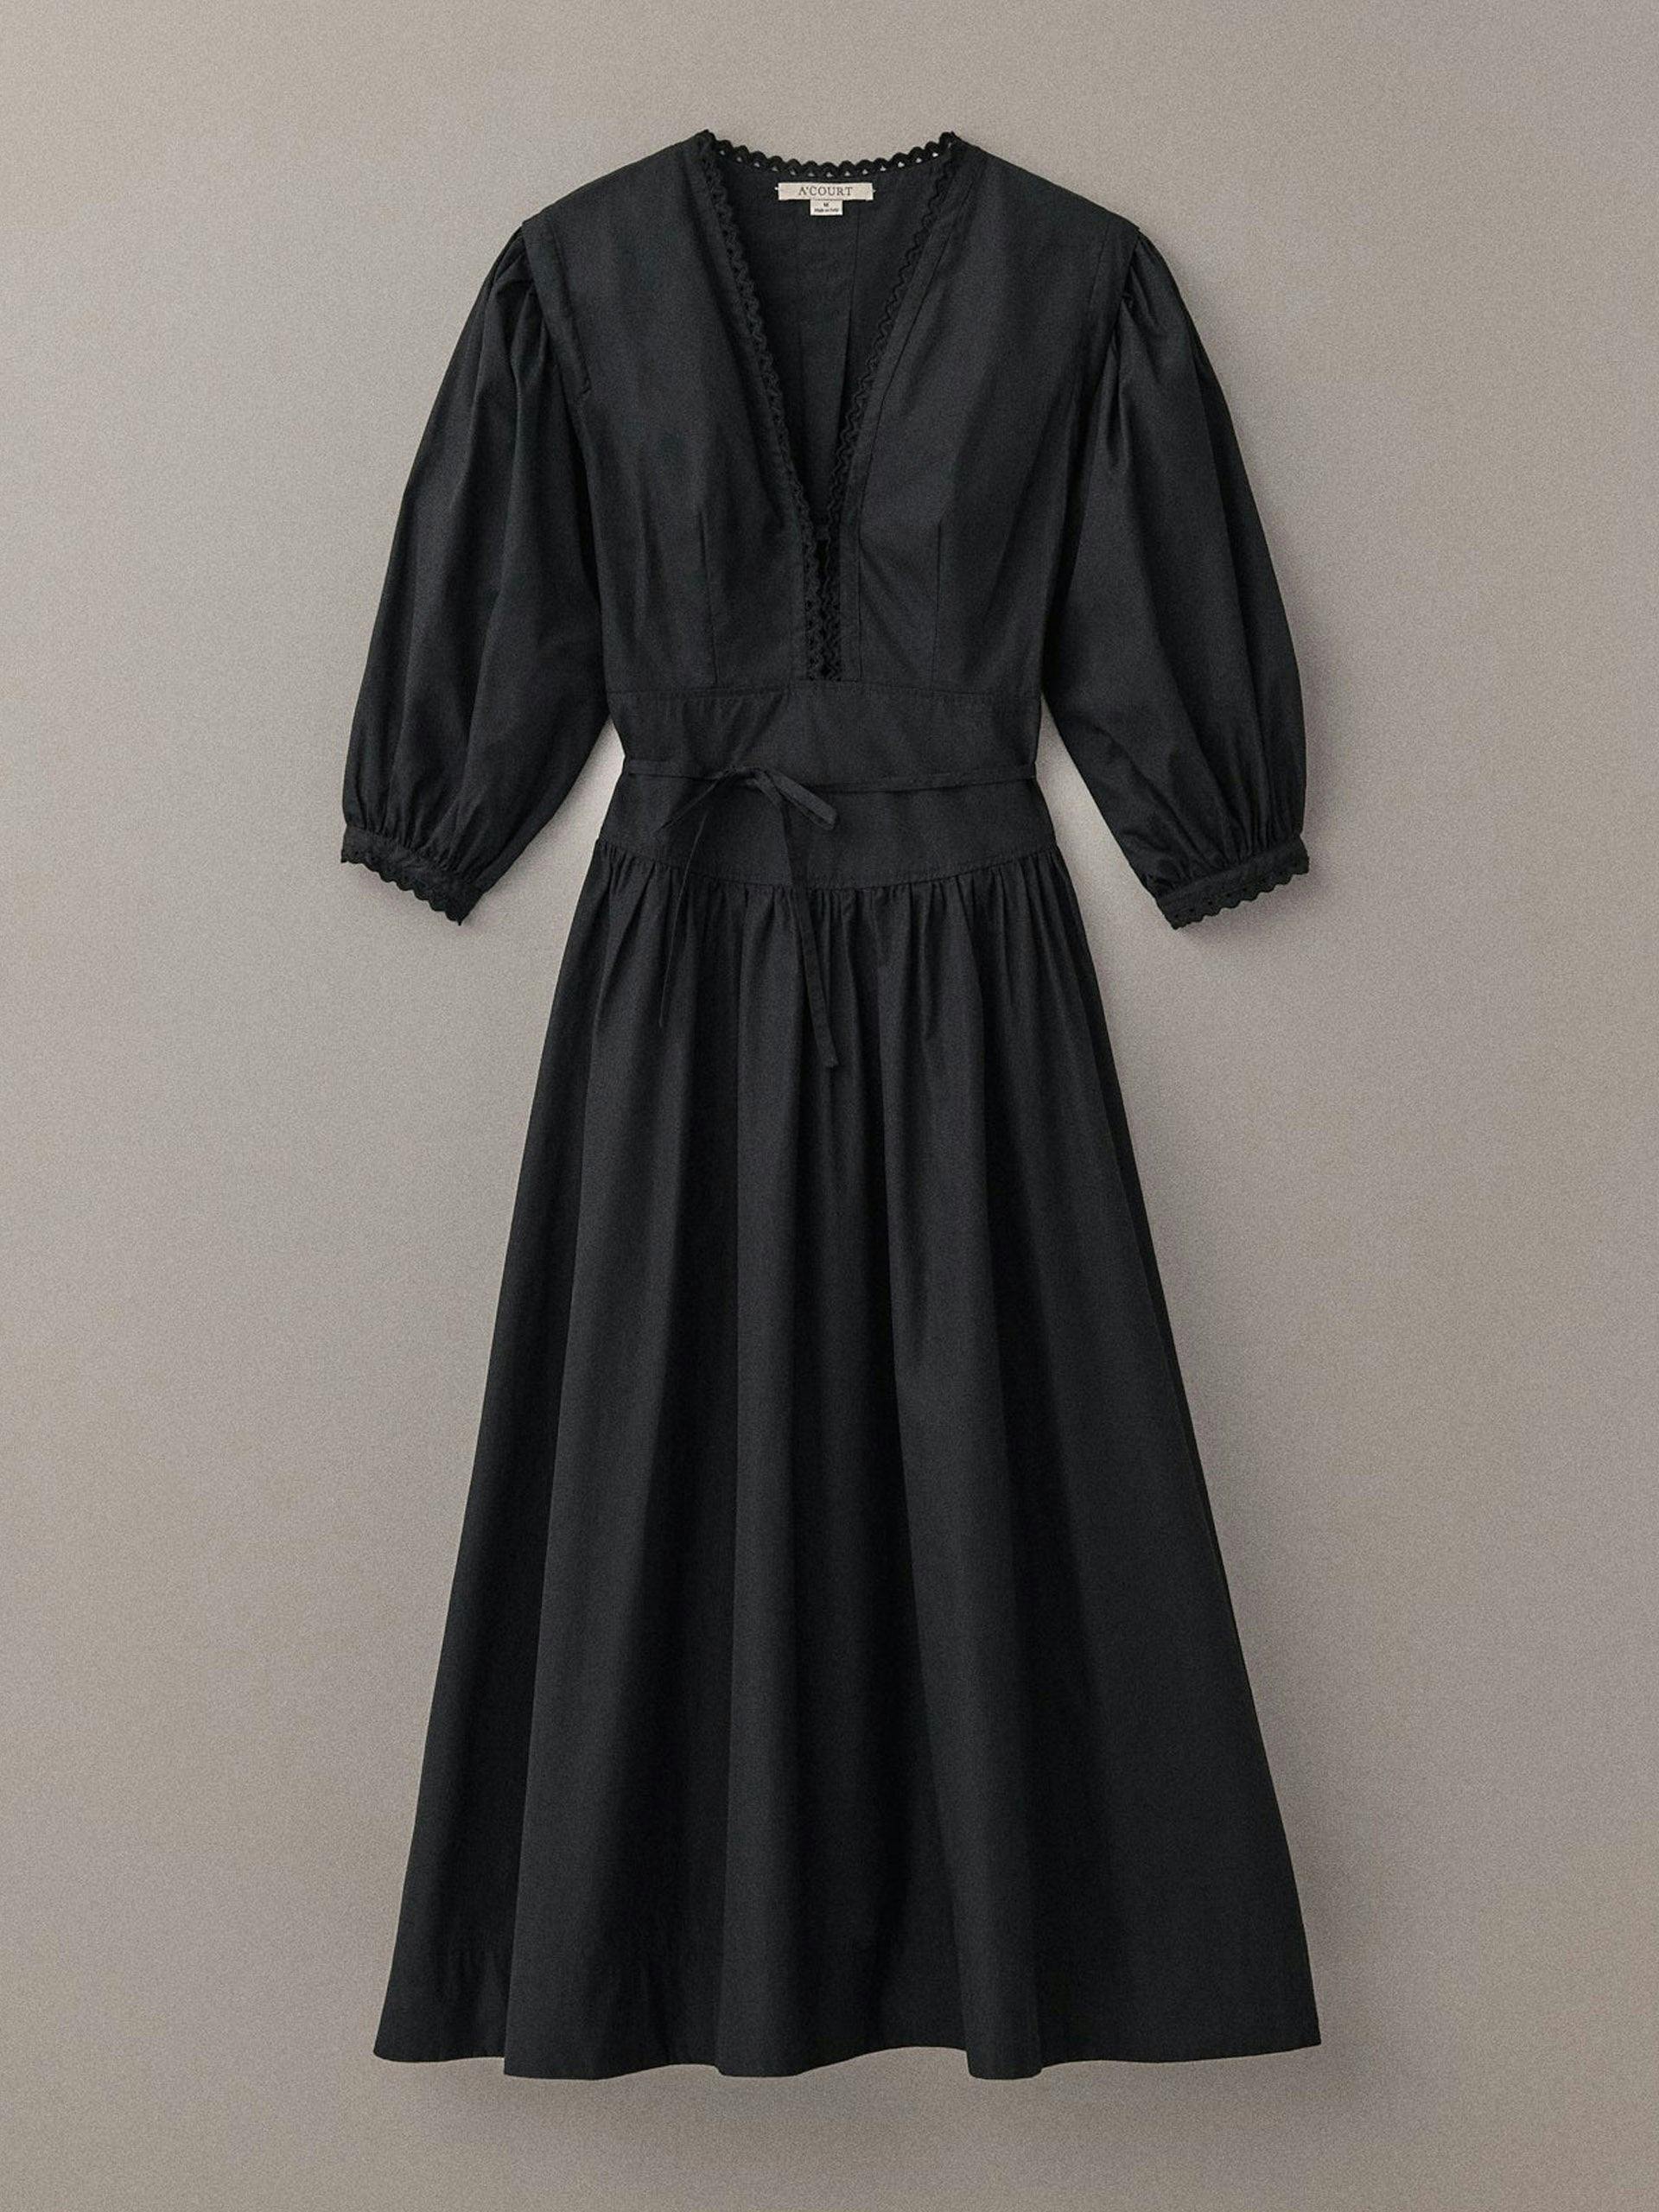 Black cotton Camille dress